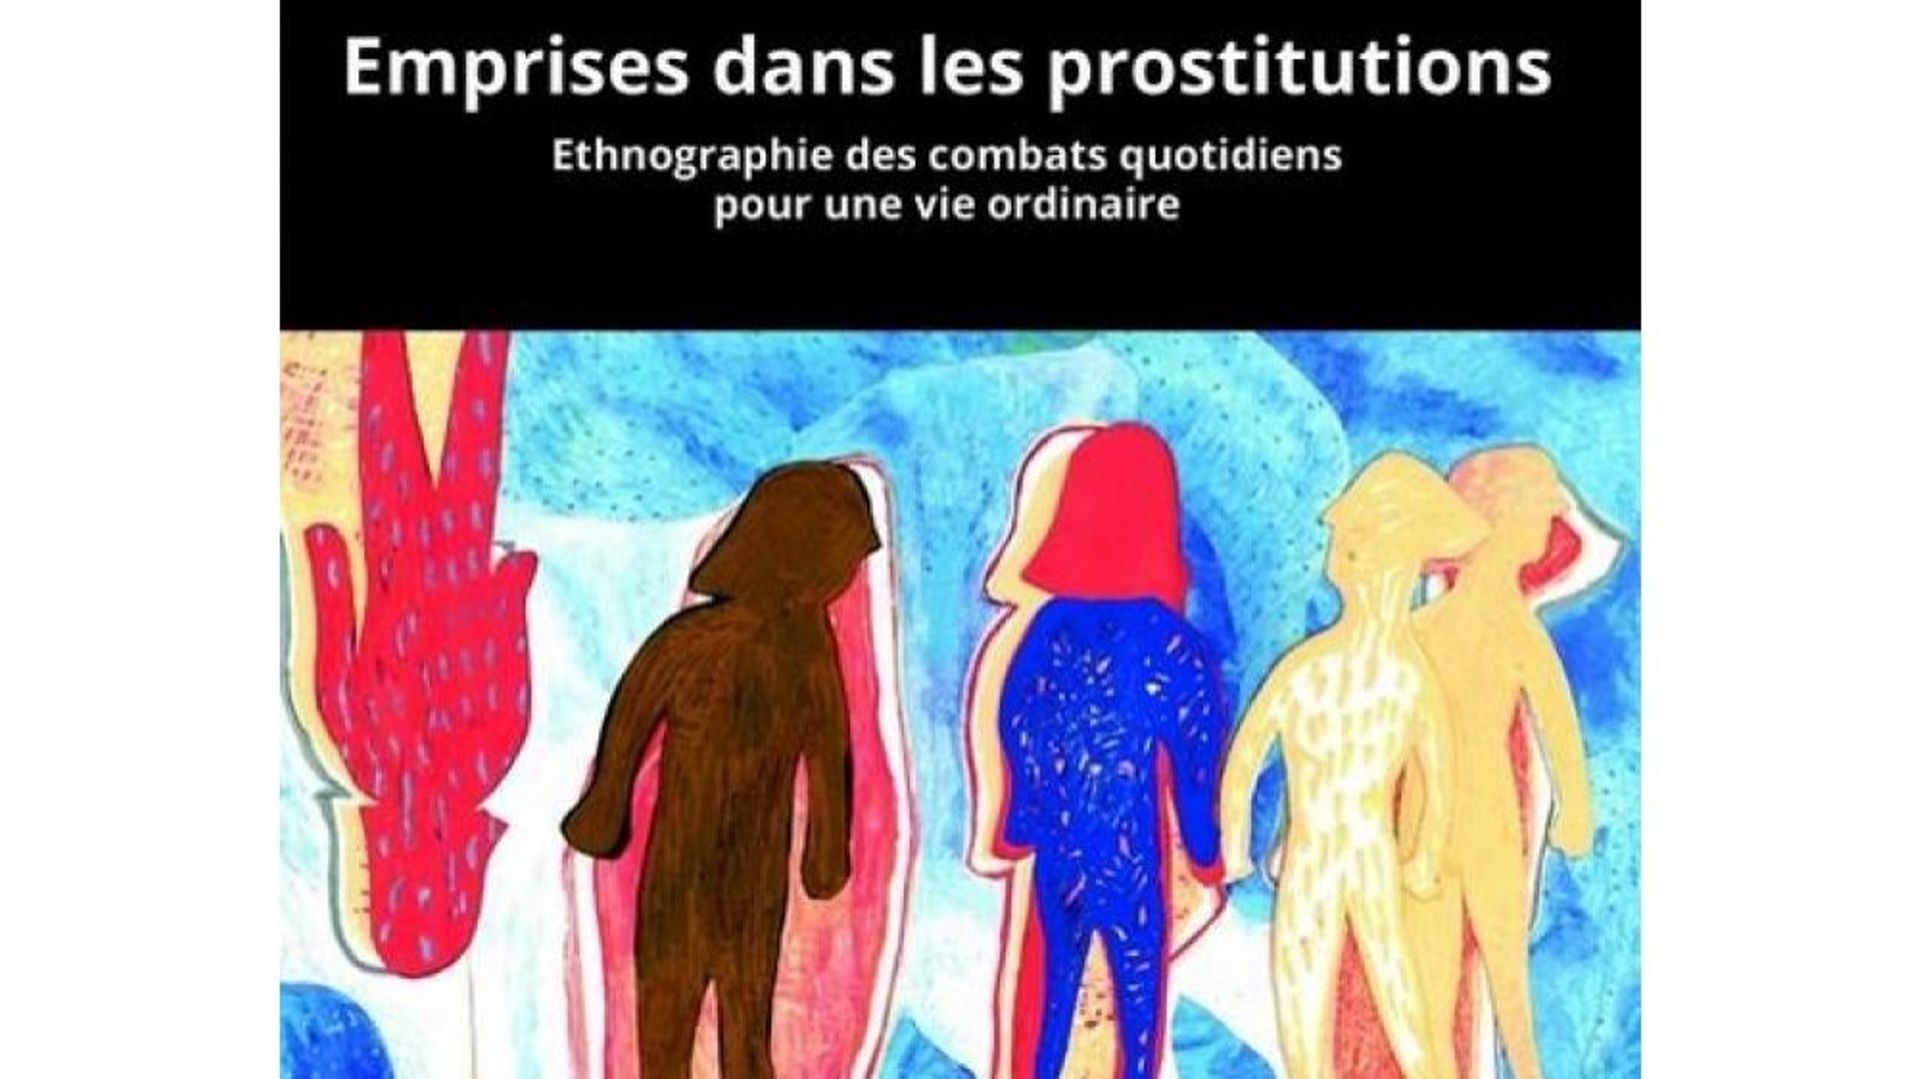 Emprise dans les prostitutions: Ethnographie des combats quotidiens pour une vie ordinaire